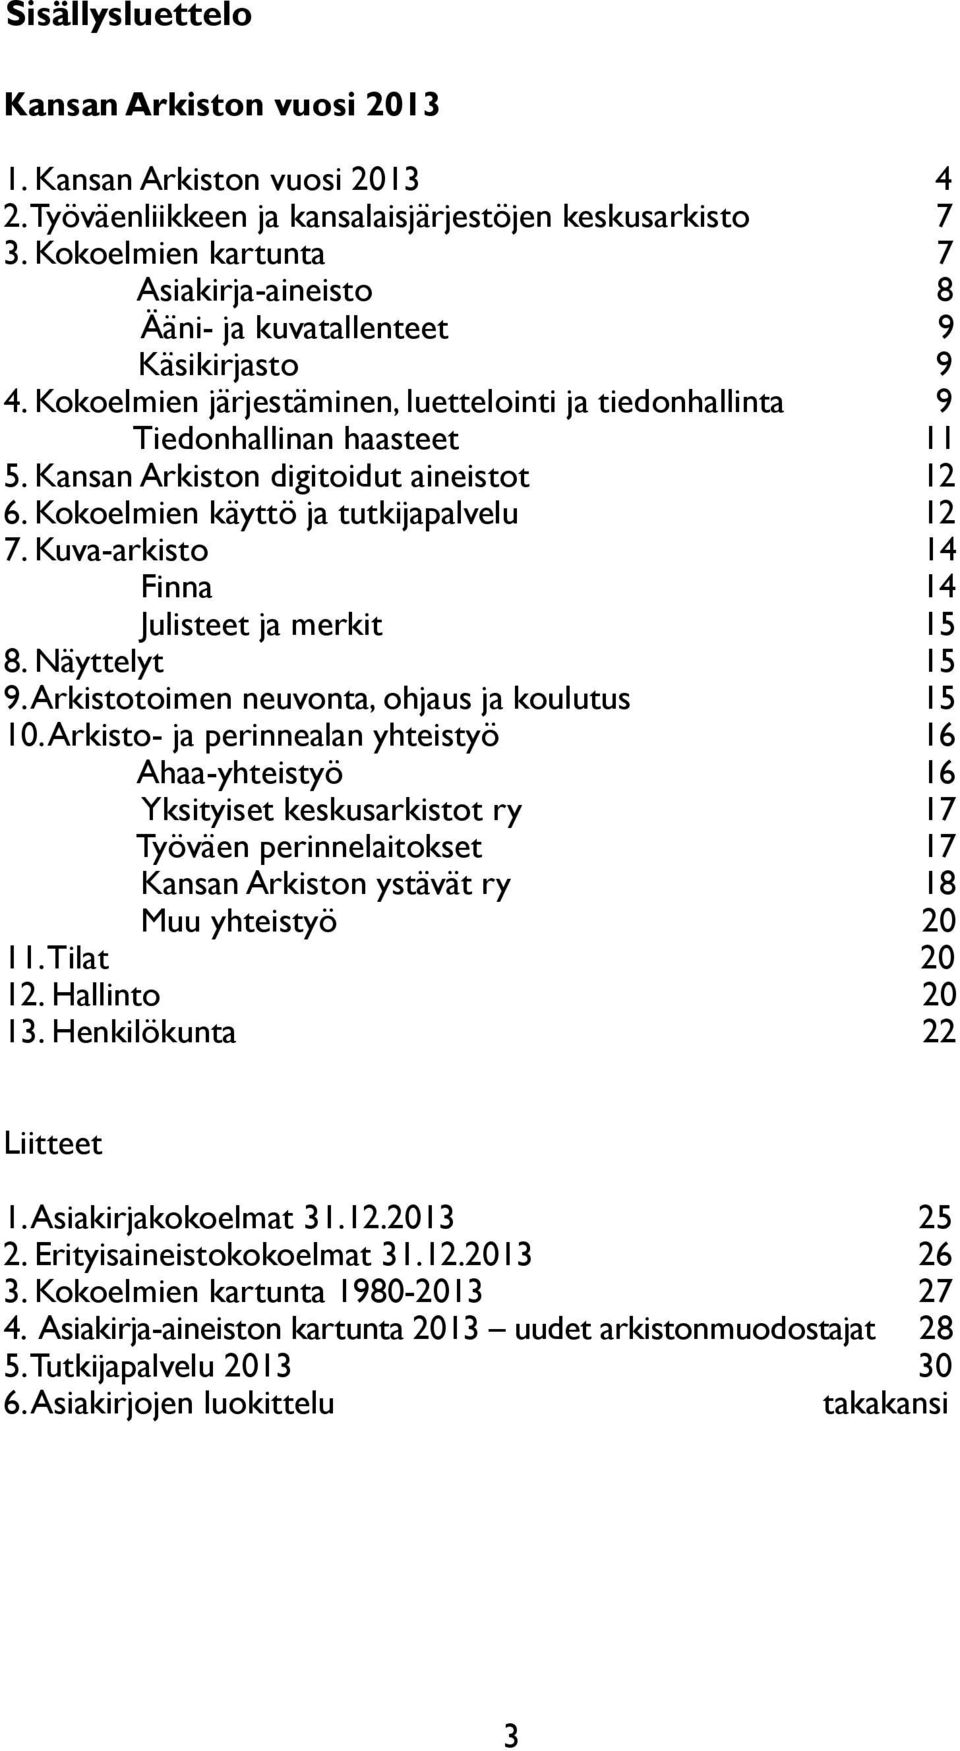 Kansan Arkiston digitoidut aineistot 12 6. Kokoelmien käyttö ja tutkijapalvelu 12 7. Kuva-arkisto 14 Finna 14 Julisteet ja merkit 15 8. Näyttelyt 15 9.